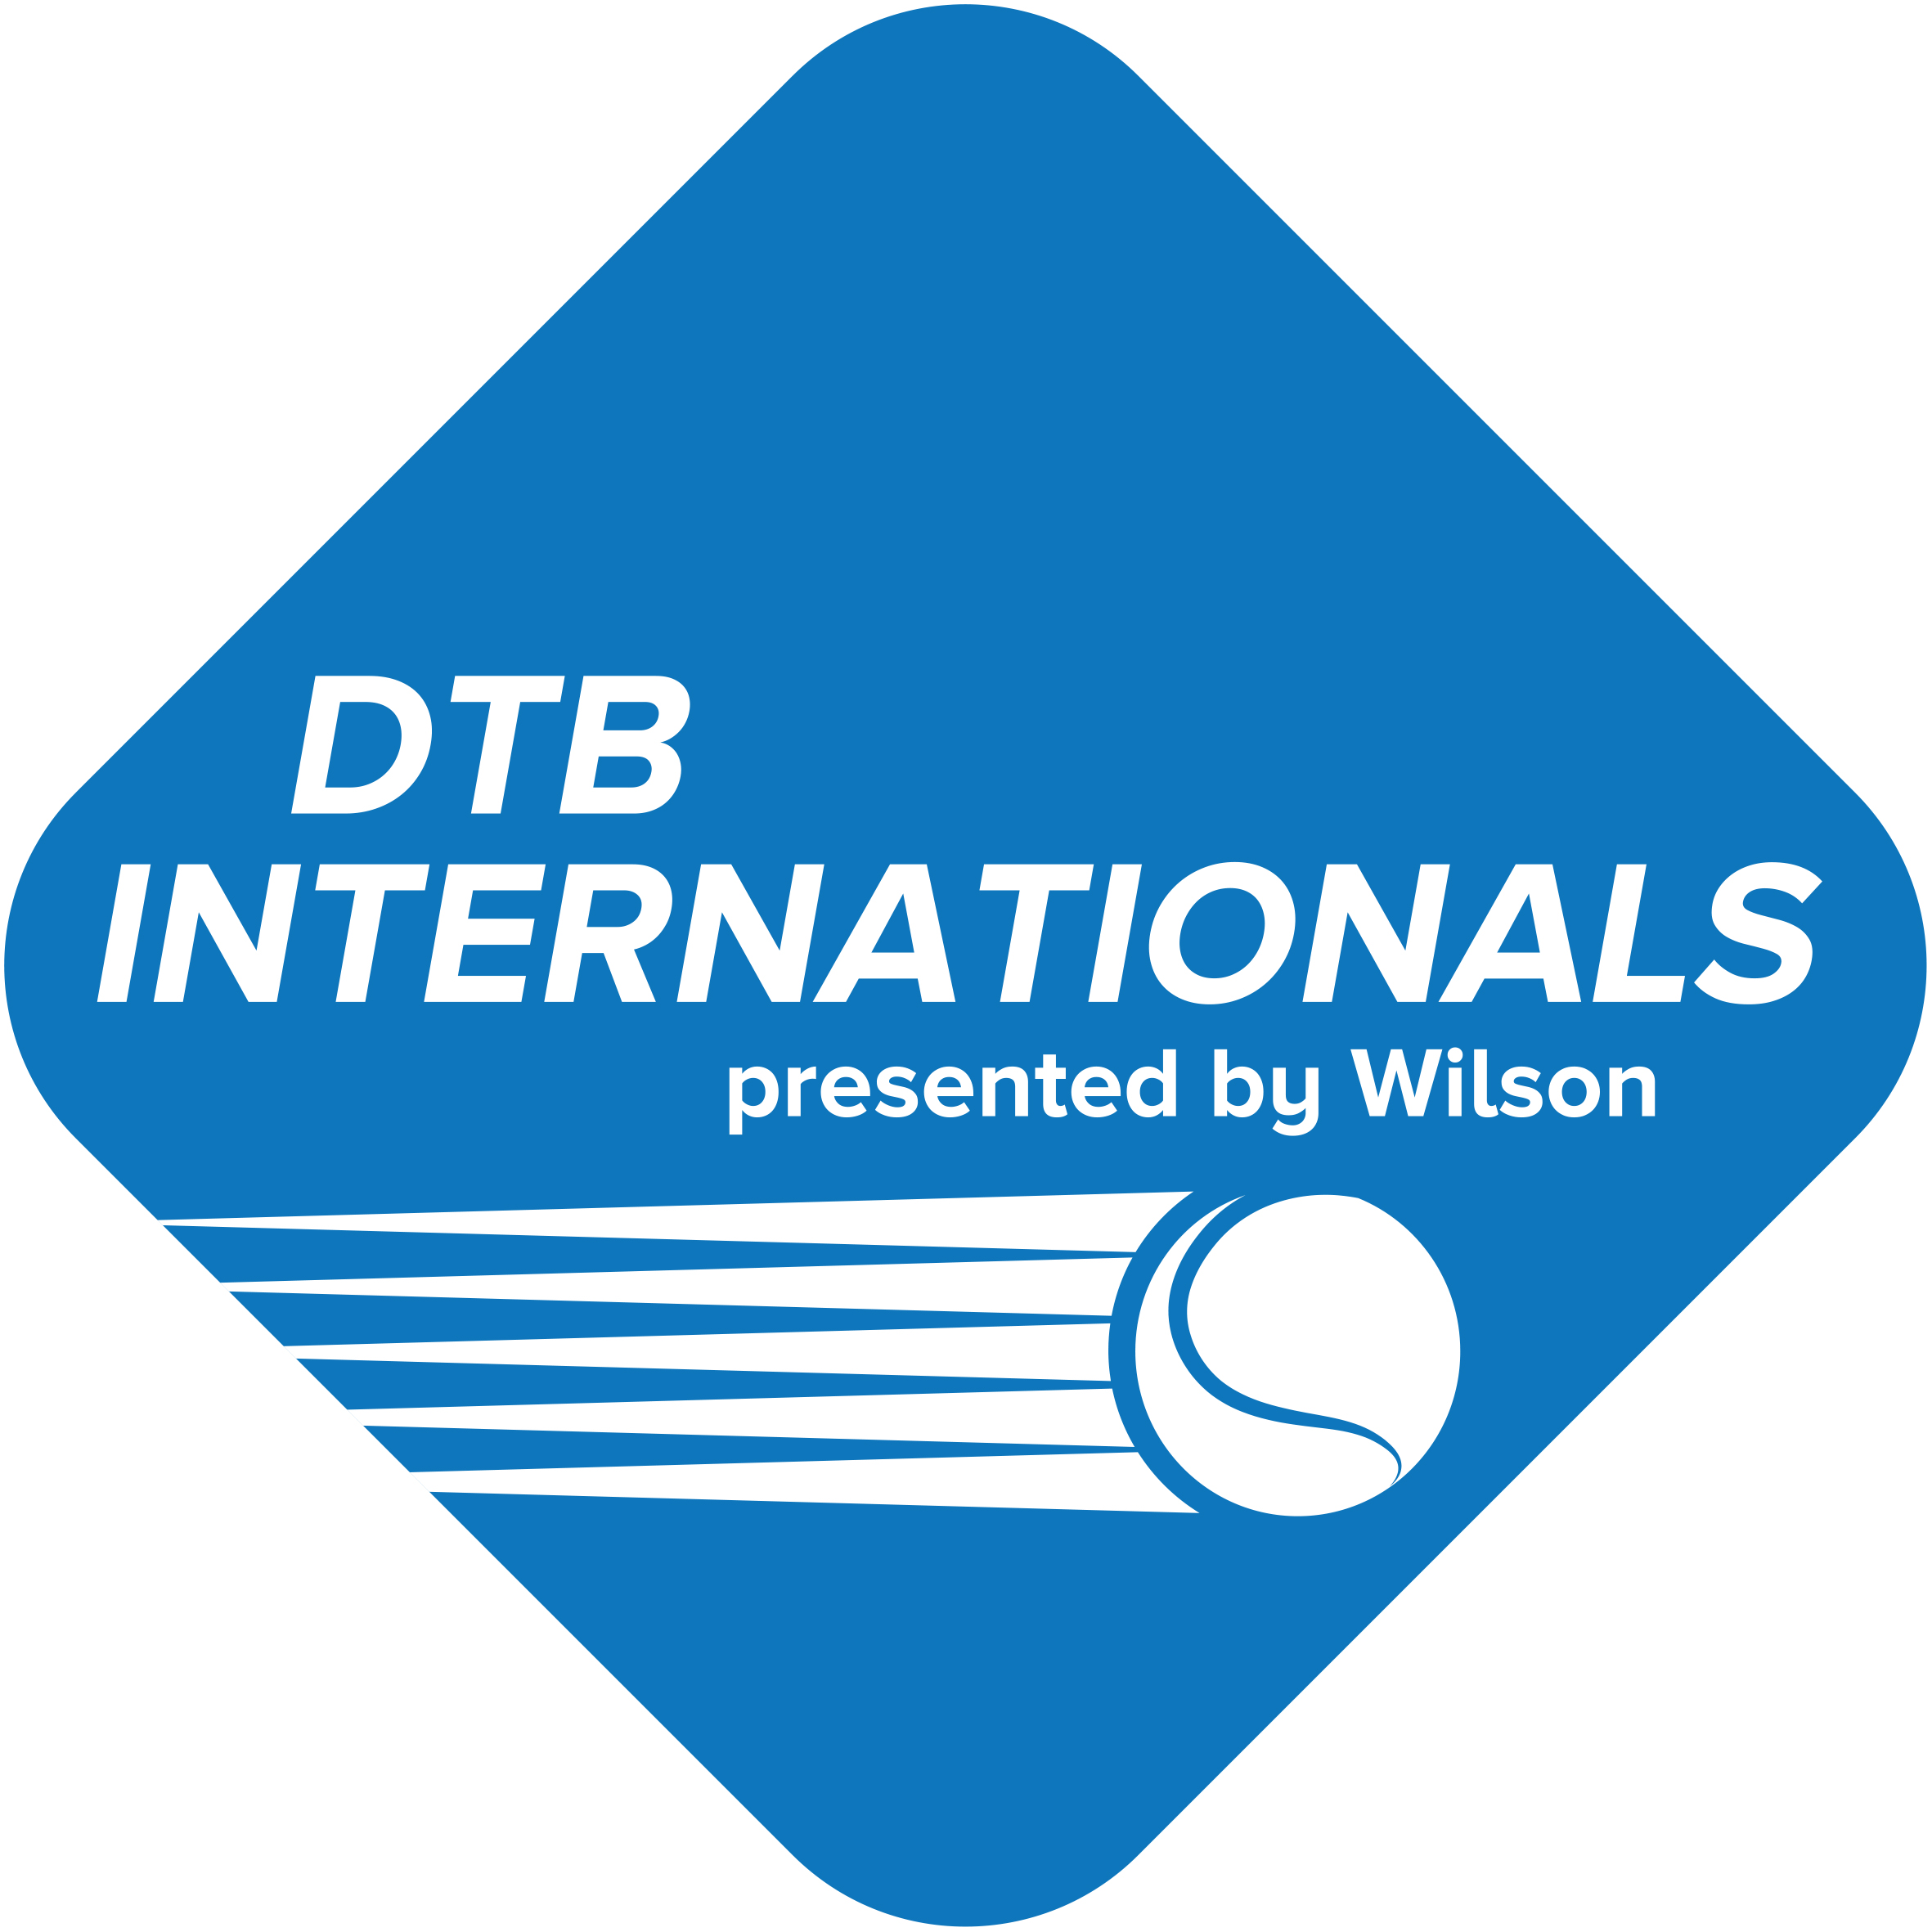 DTB_INTERNATIONALS_Logo